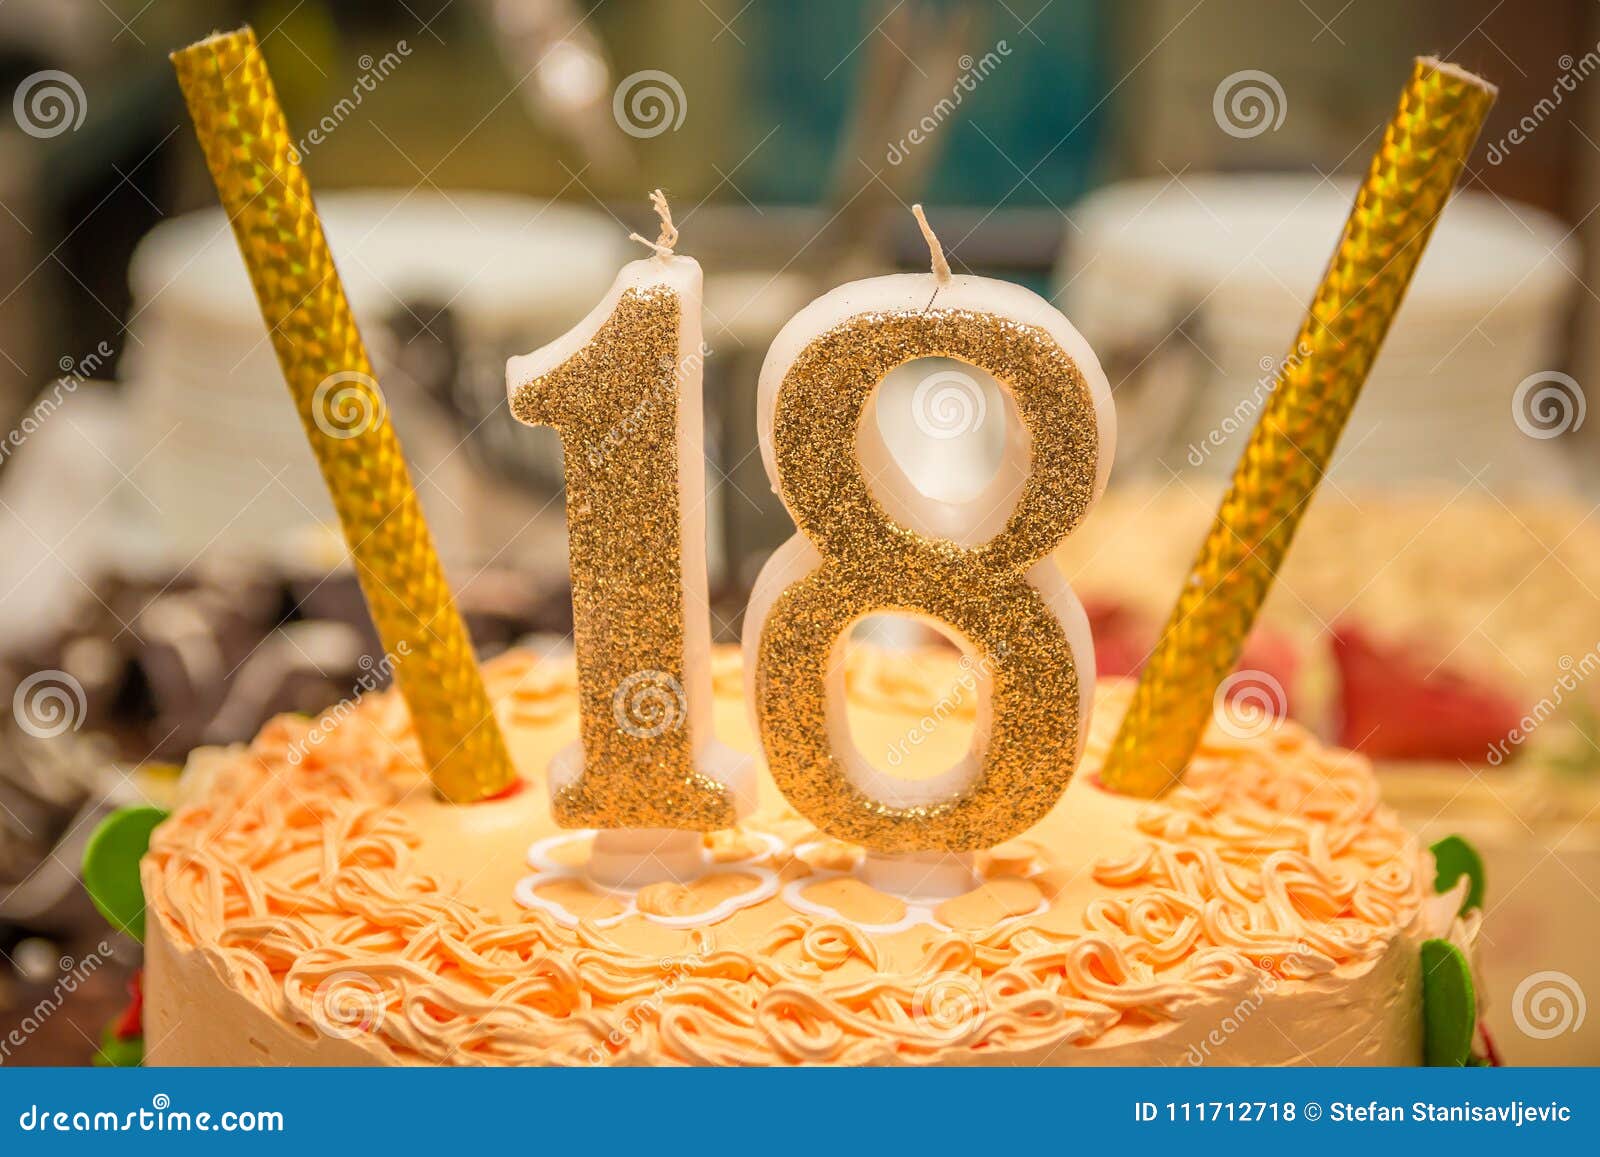 Bolo de aniversário para homem: 118 ideias para festa